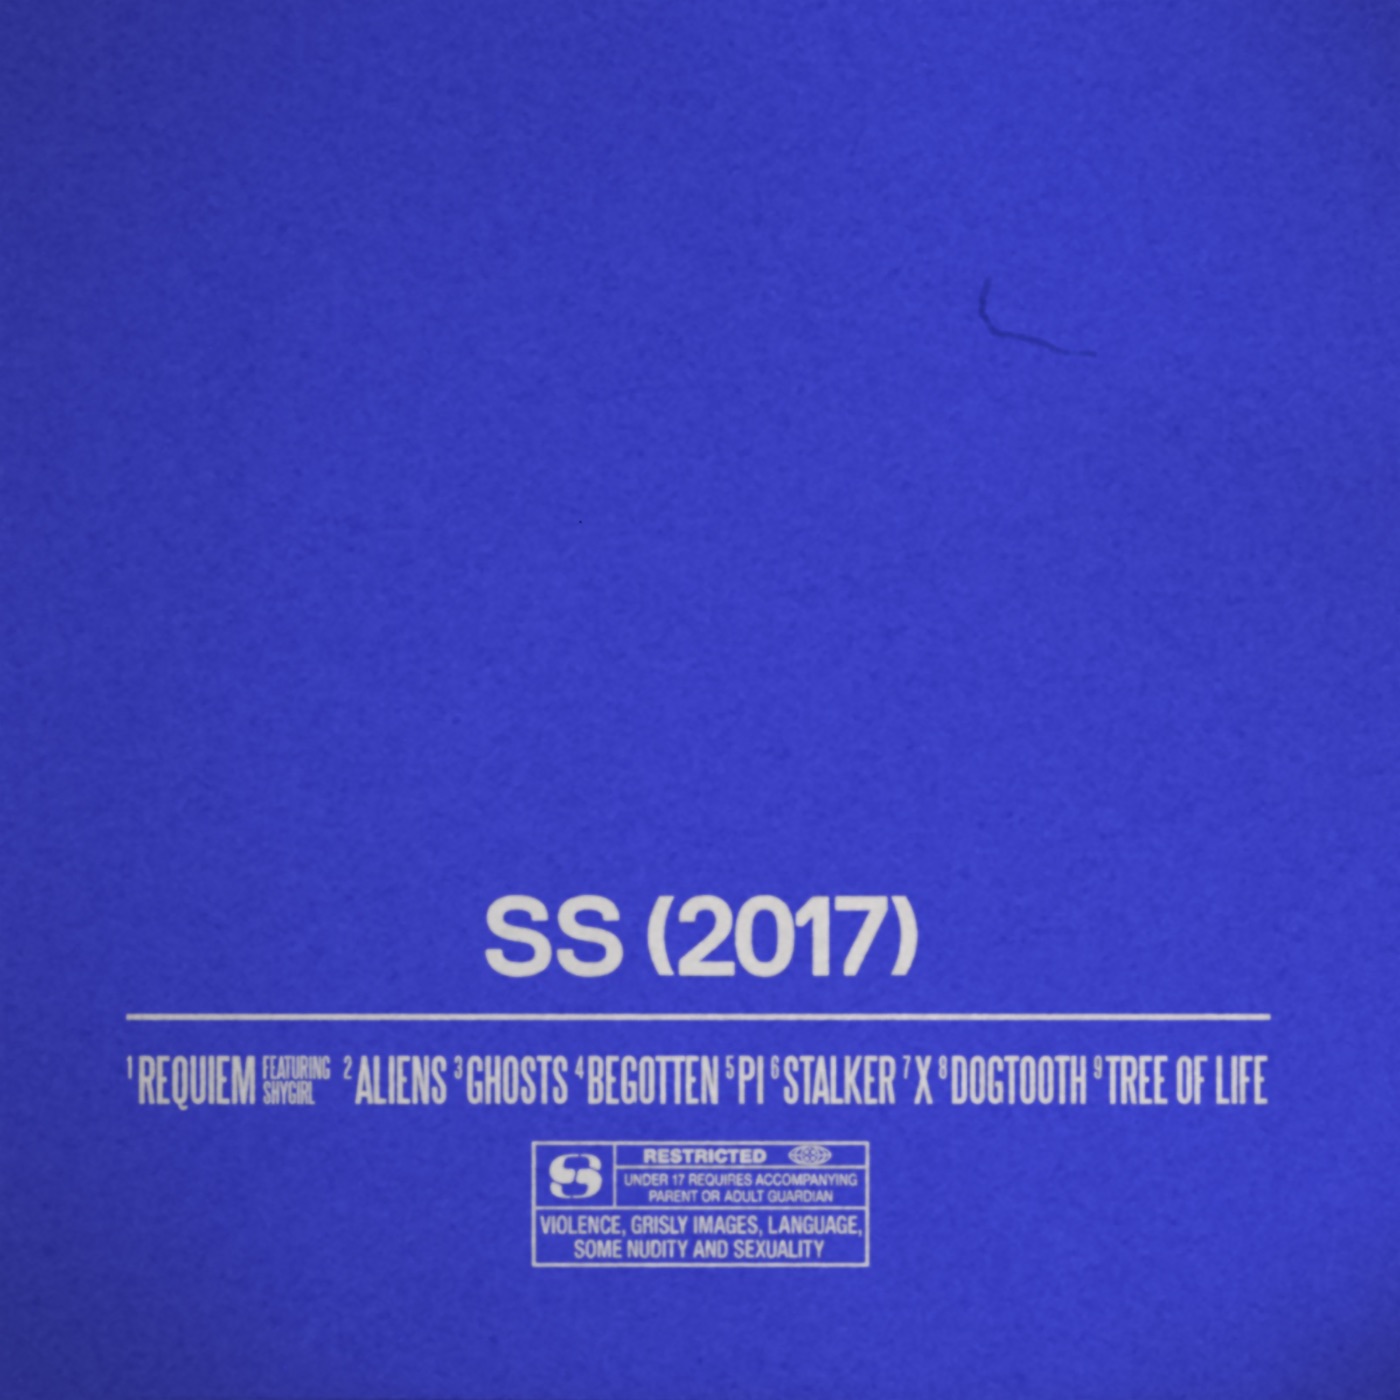 SS (2017) by Sega Bodega